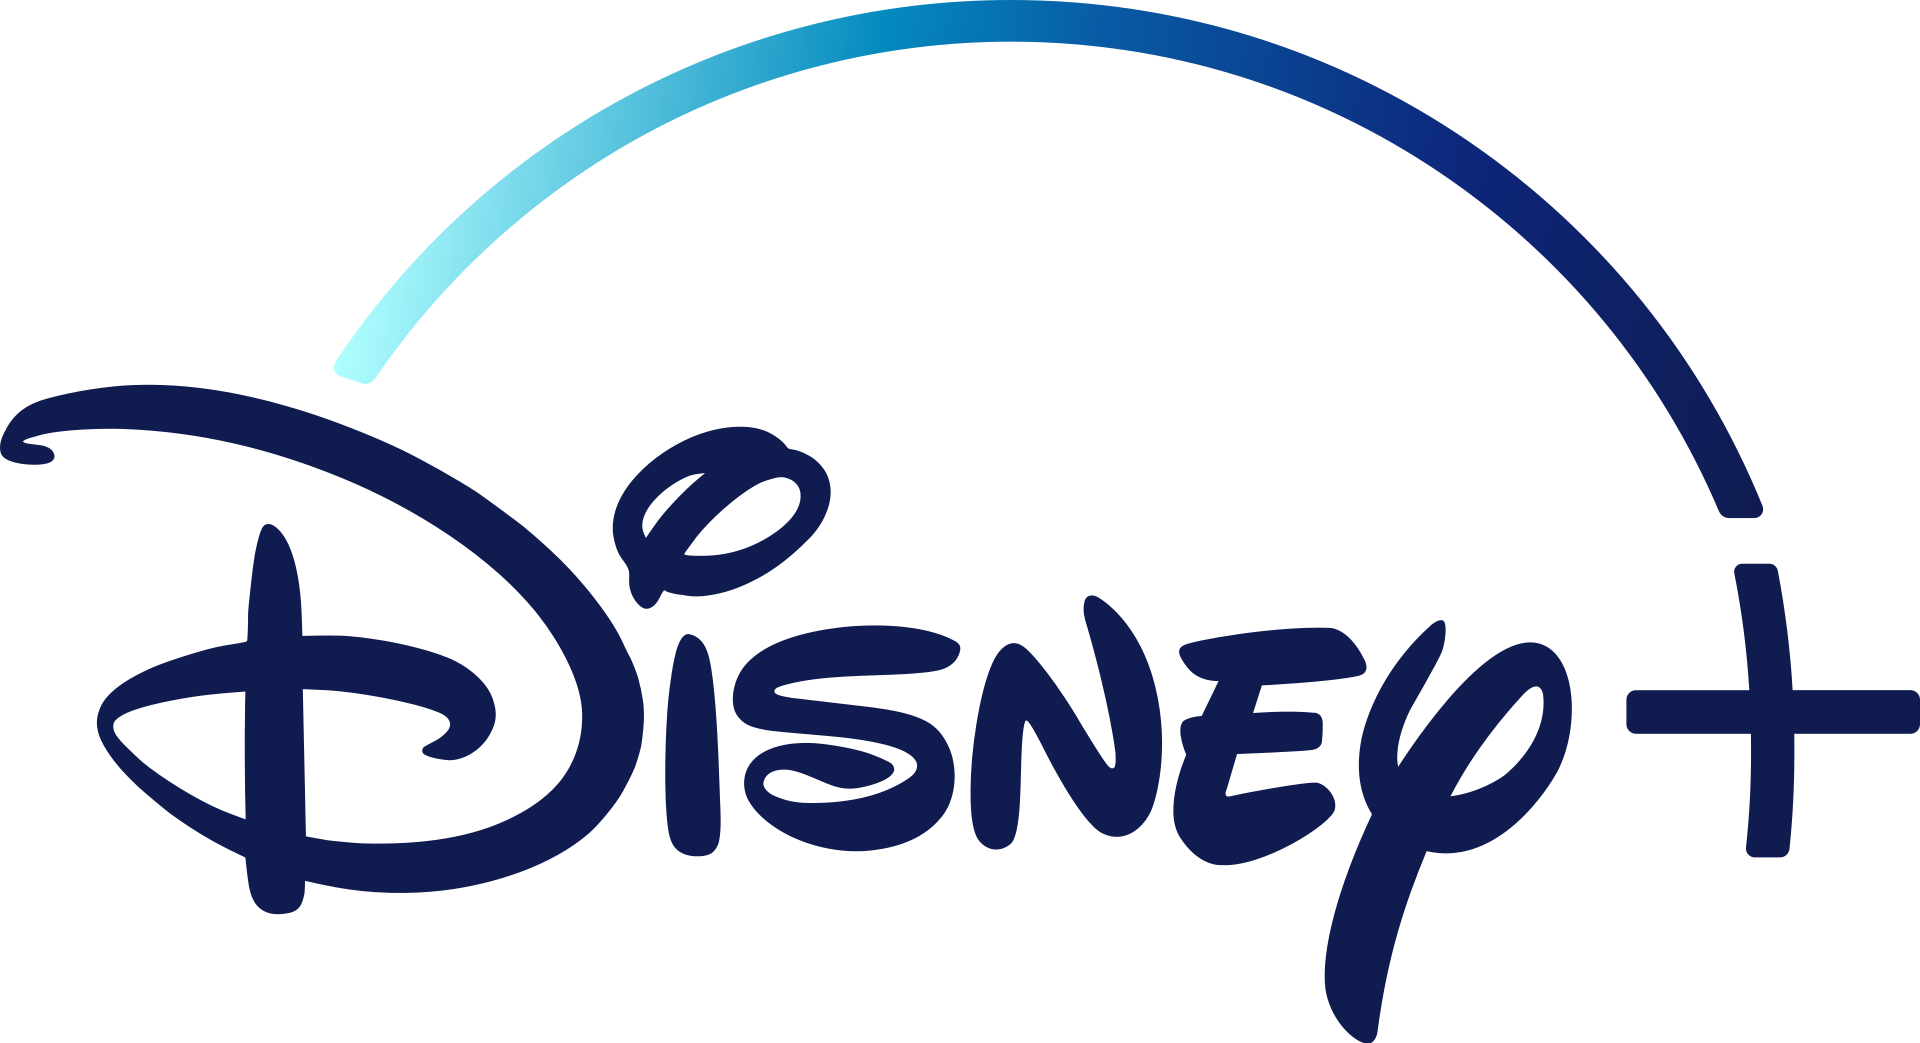 Disney+ rebajado de 69,99 euros a 59,99 euros durante un año: oferta limitada hasta el 23 de marzo